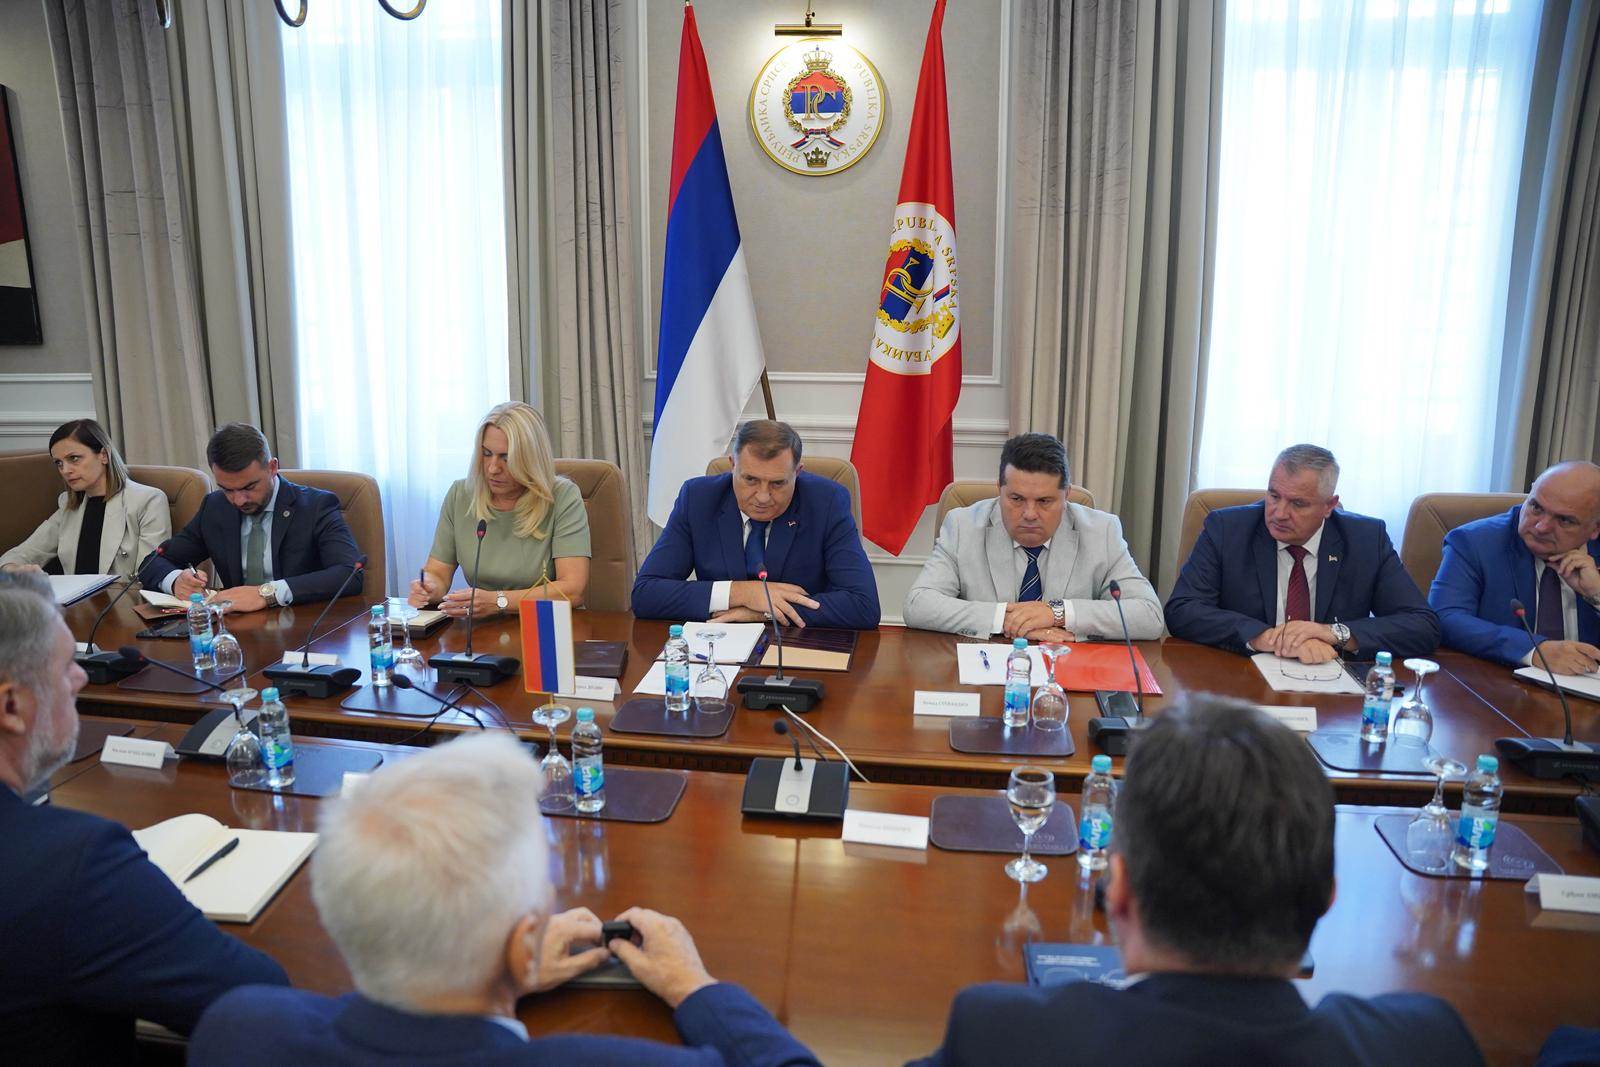  Milorad Dodik s predstavnicima institucija Republike Srpske 